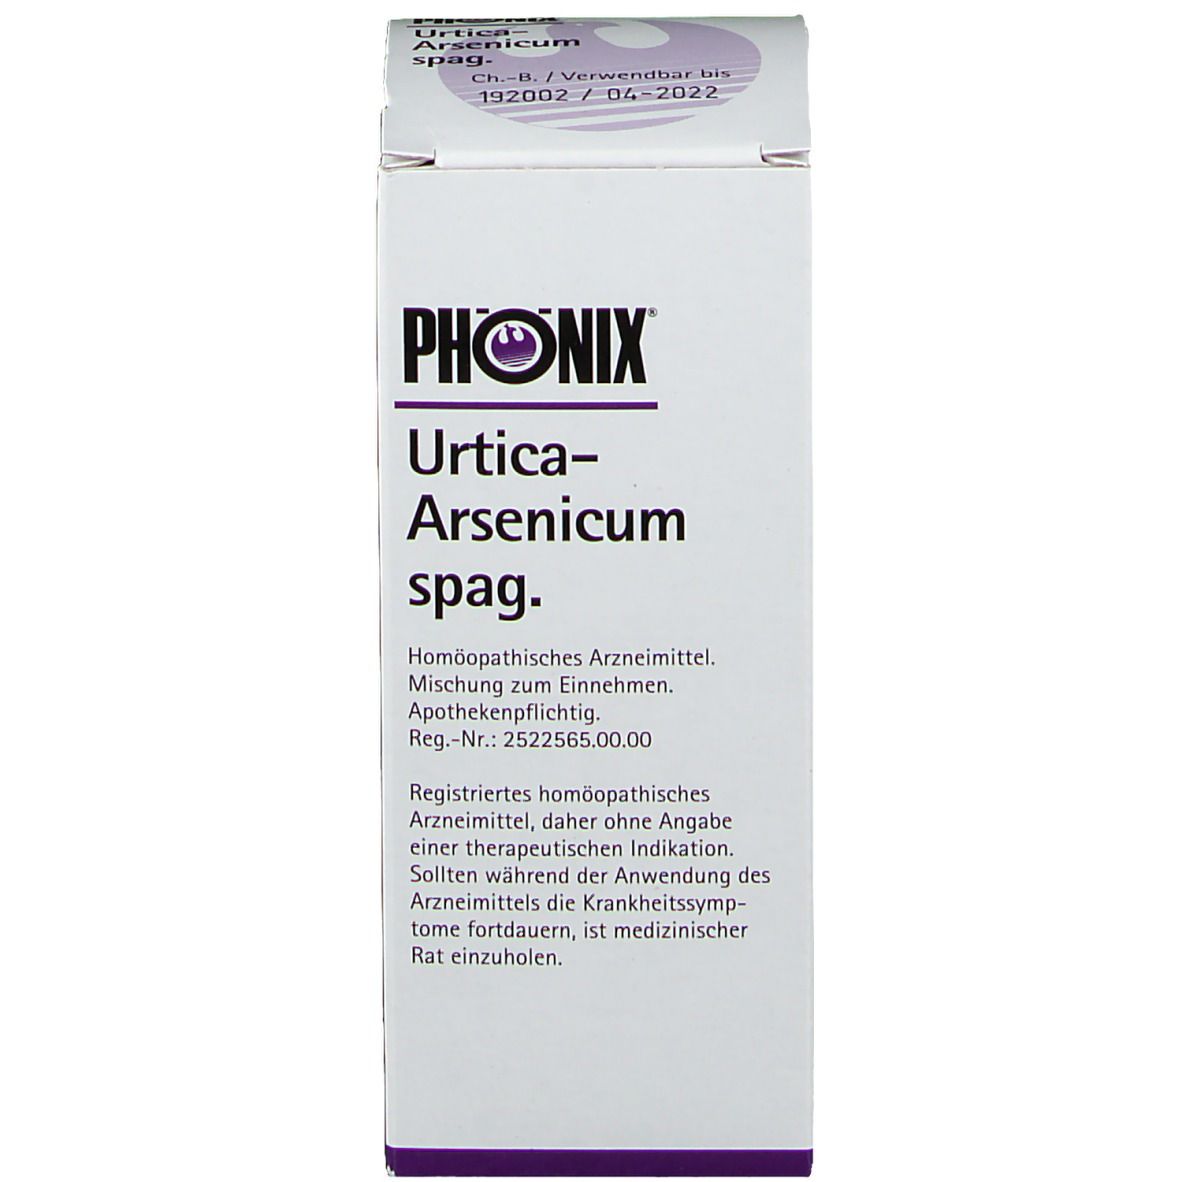 PHÖNIX Urtica-Arsenicum spag.